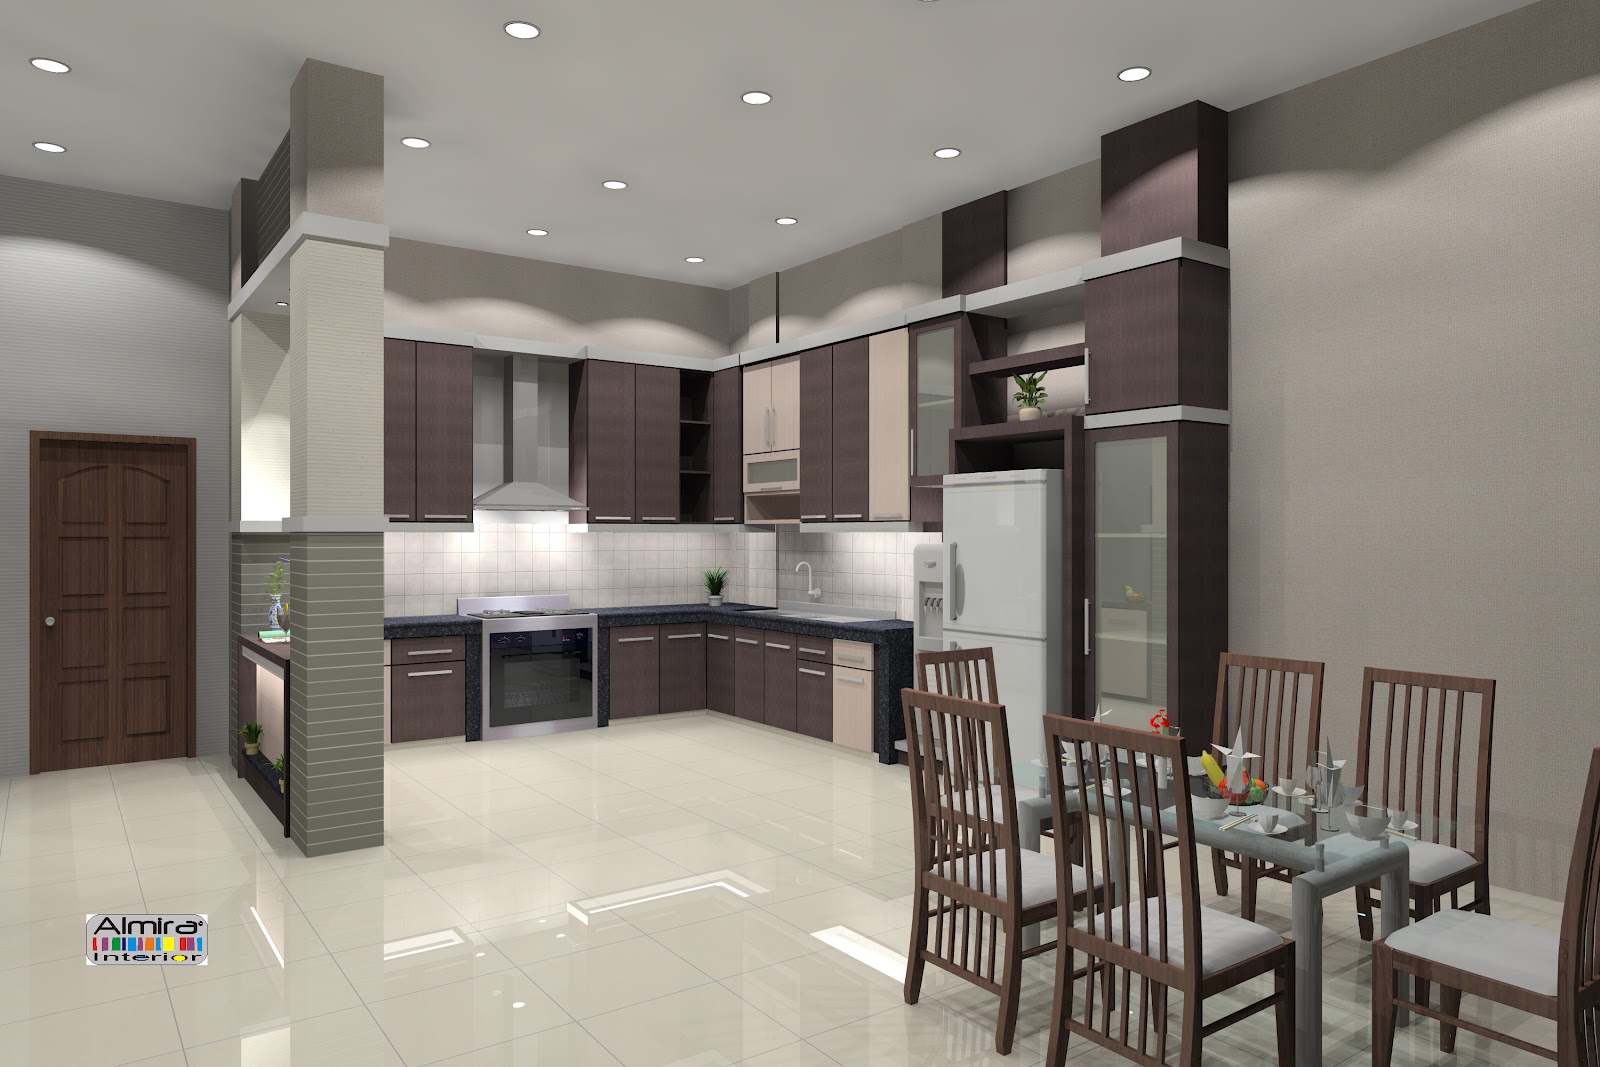 Almira Interior & Design: Kitchen Set